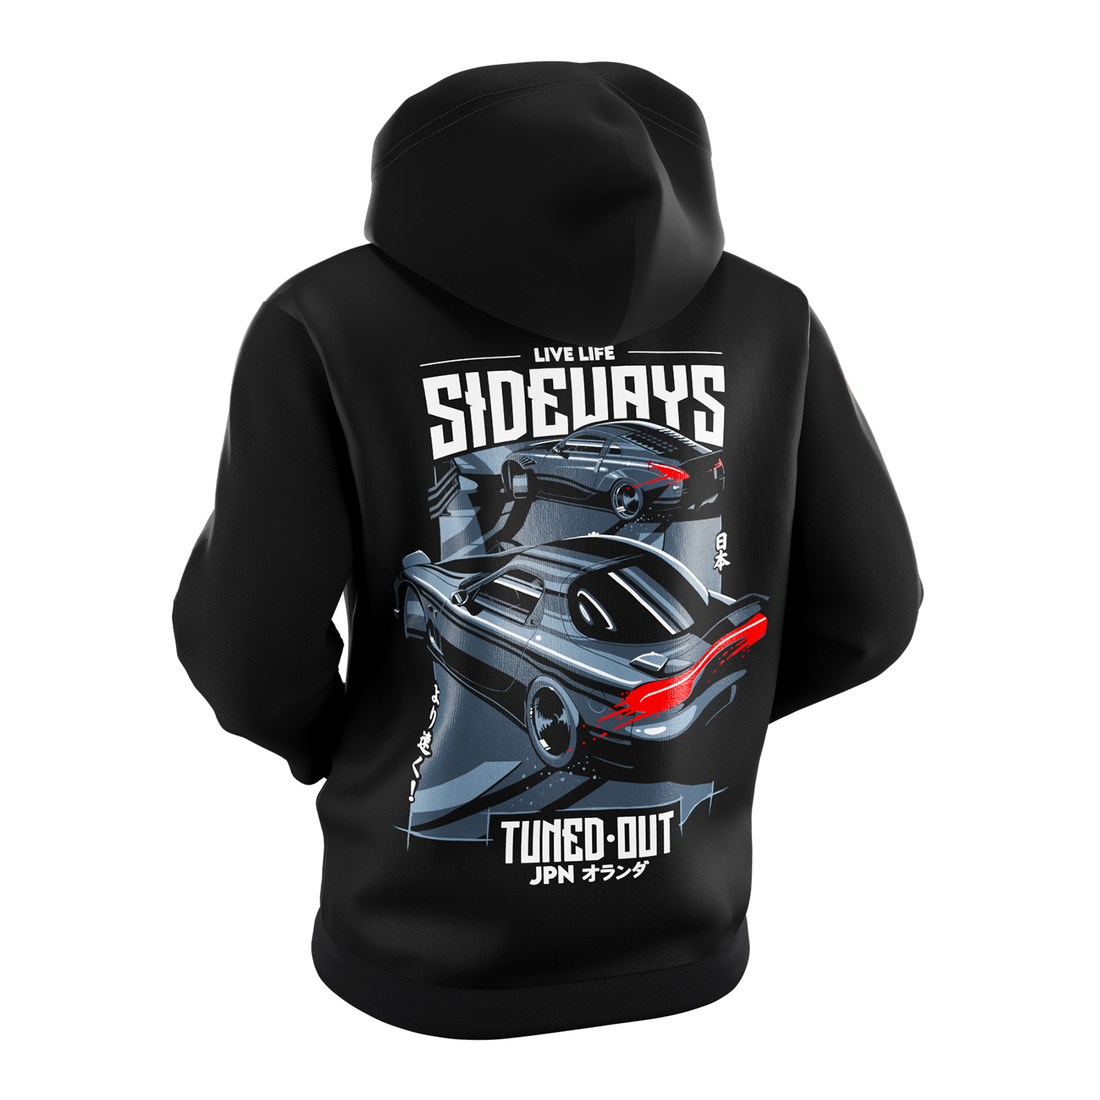 Live Life Sideways hoodie